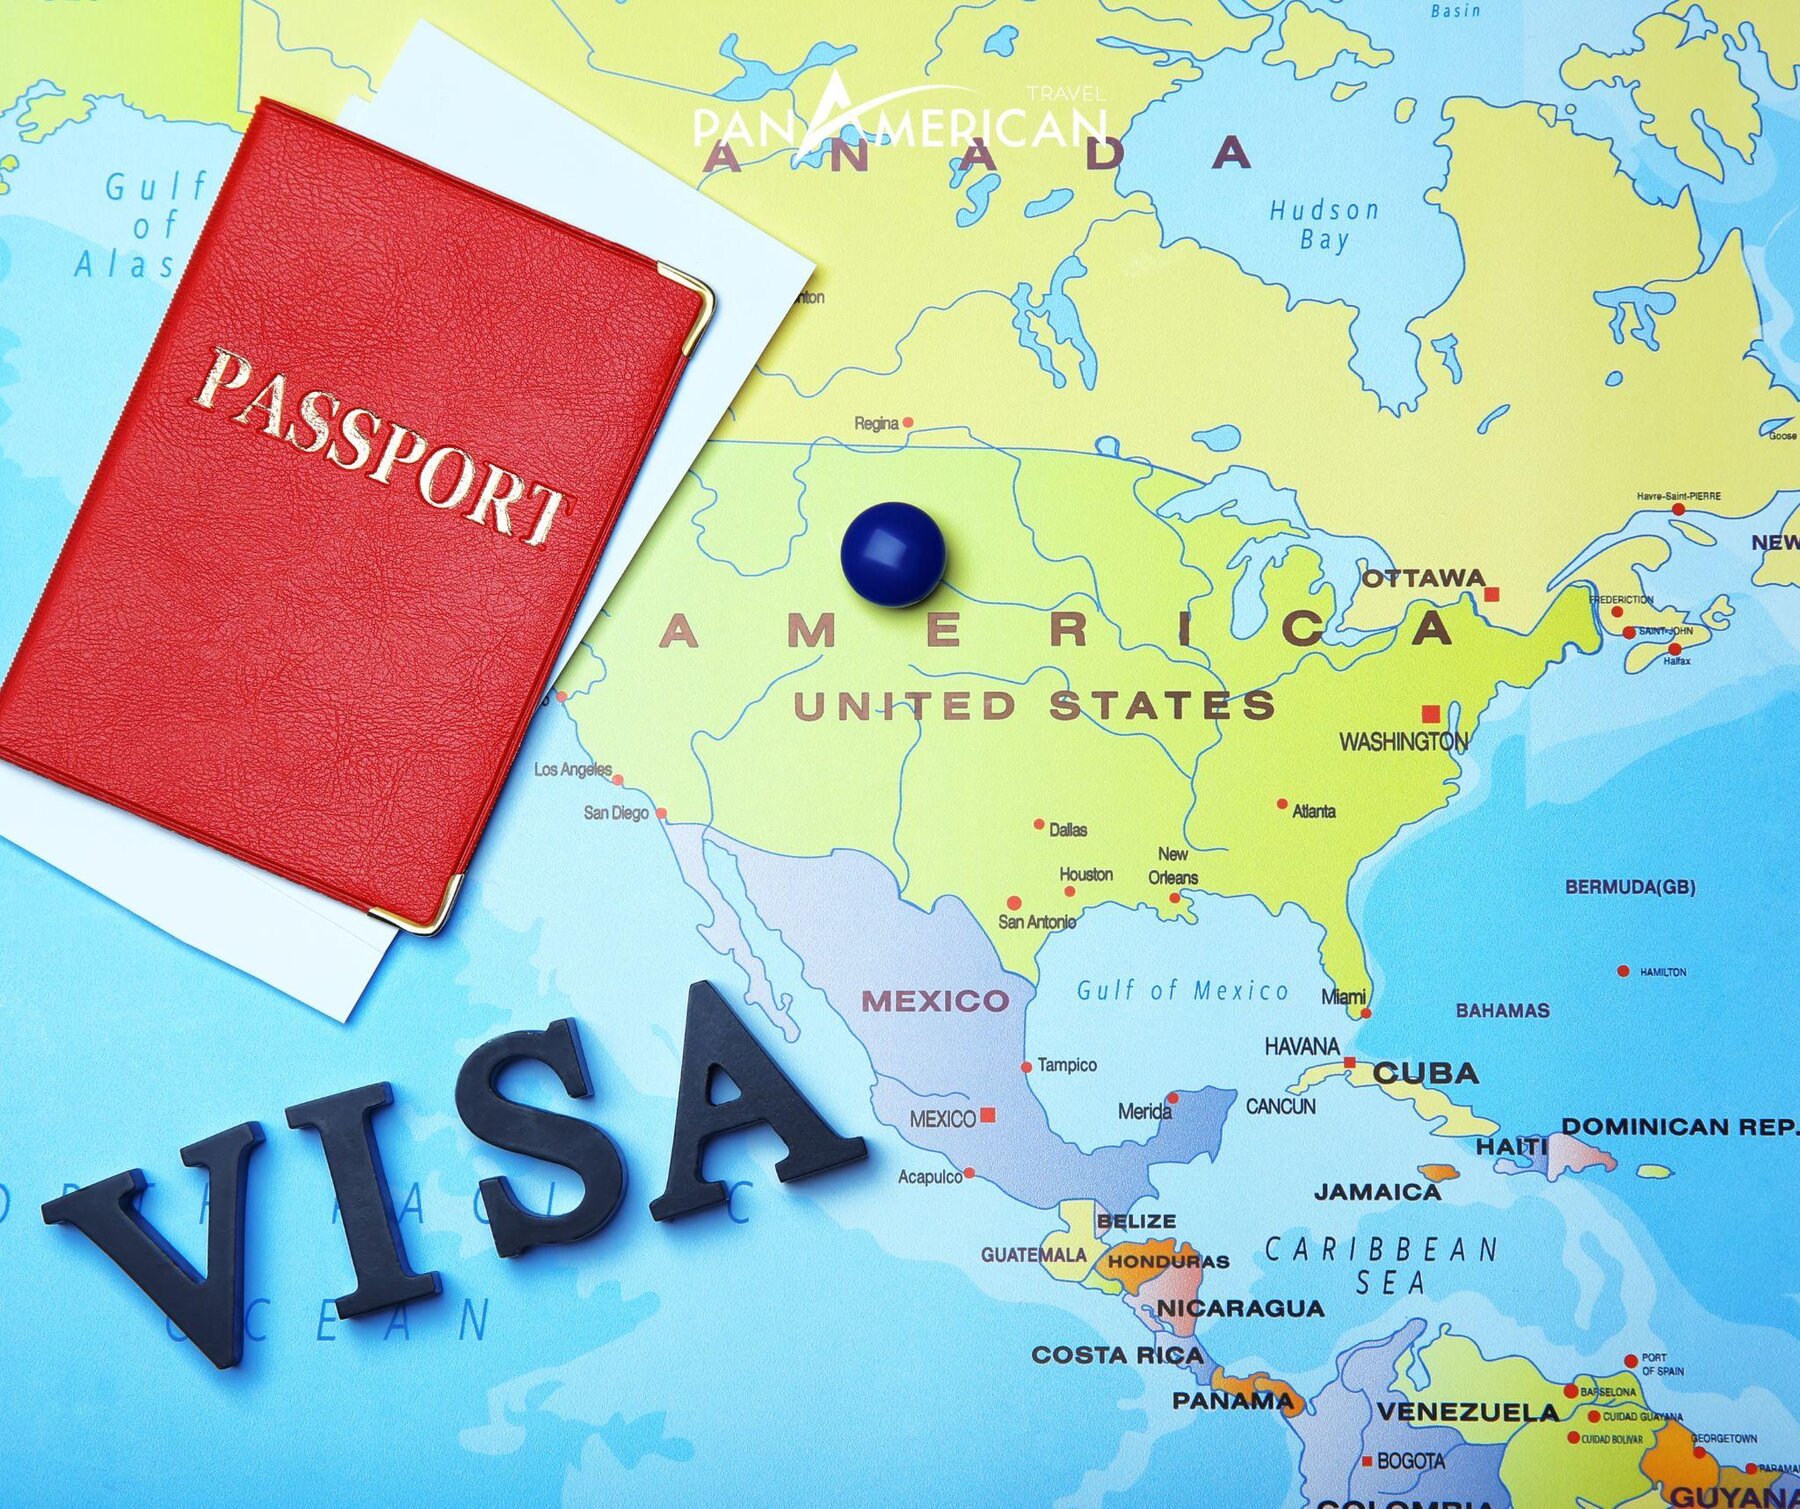 Hiện nay thủ tục visa đơn giản, nhanh chóng và thuận tiện cho khách hàng